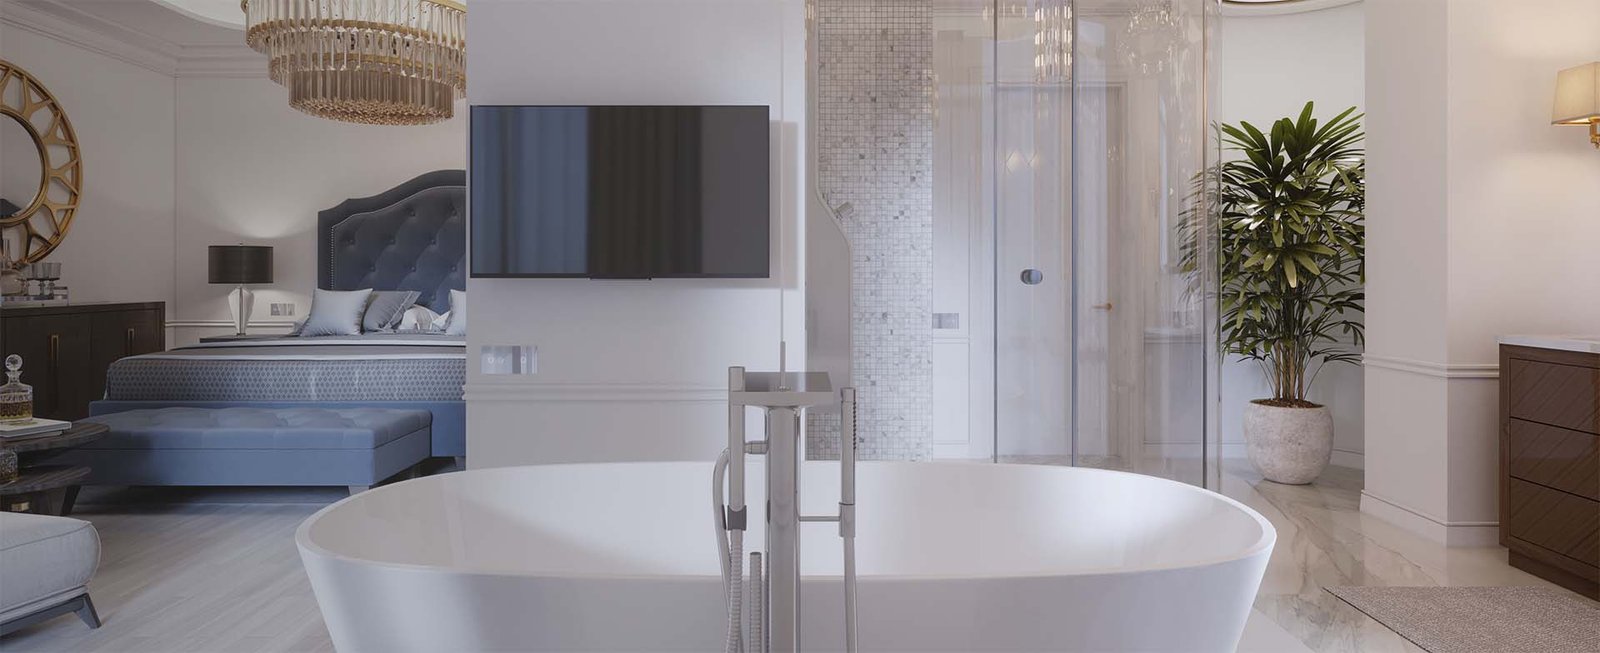 Offenes Badezimmer mit Design